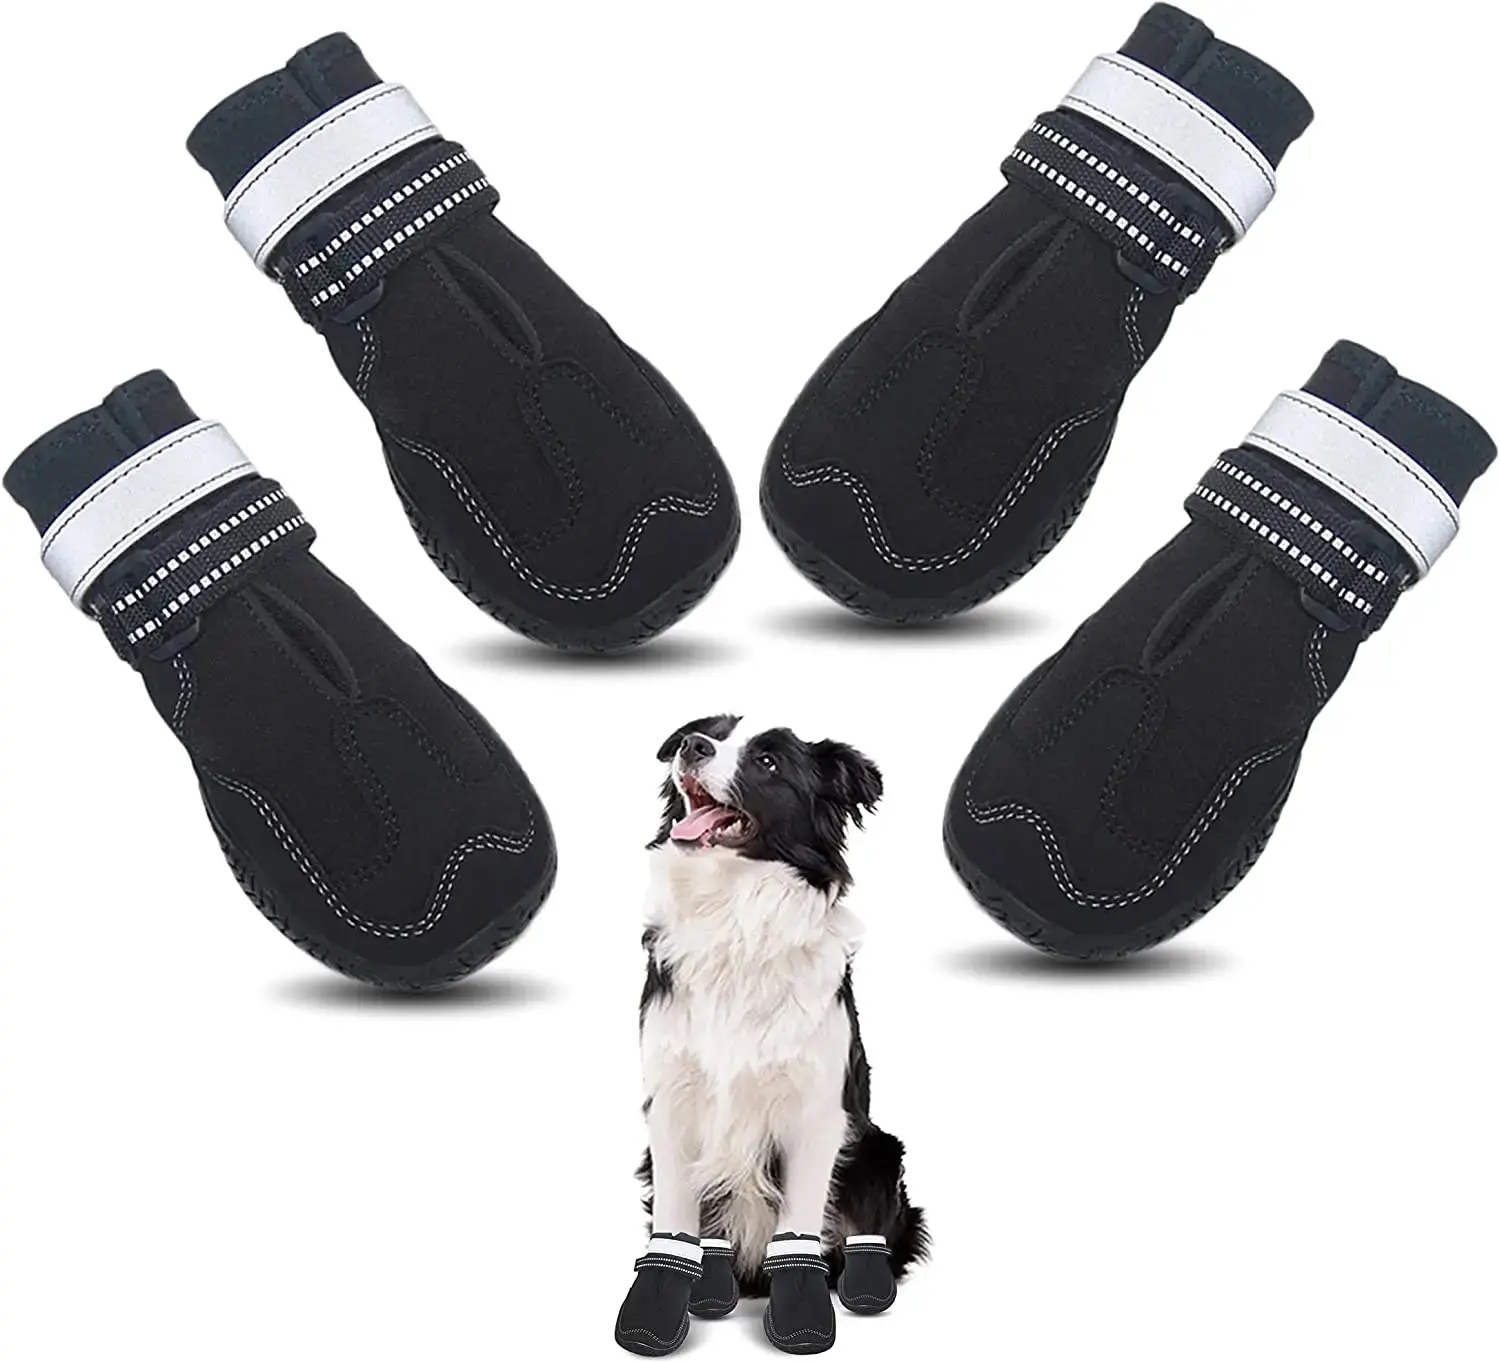 Botines para perros medianos-Pisos de madera dura resistentes al agua Senderismo Lluvia-Suela de goma antideslizante Perfecto para zapatos de perro de nieve Pata